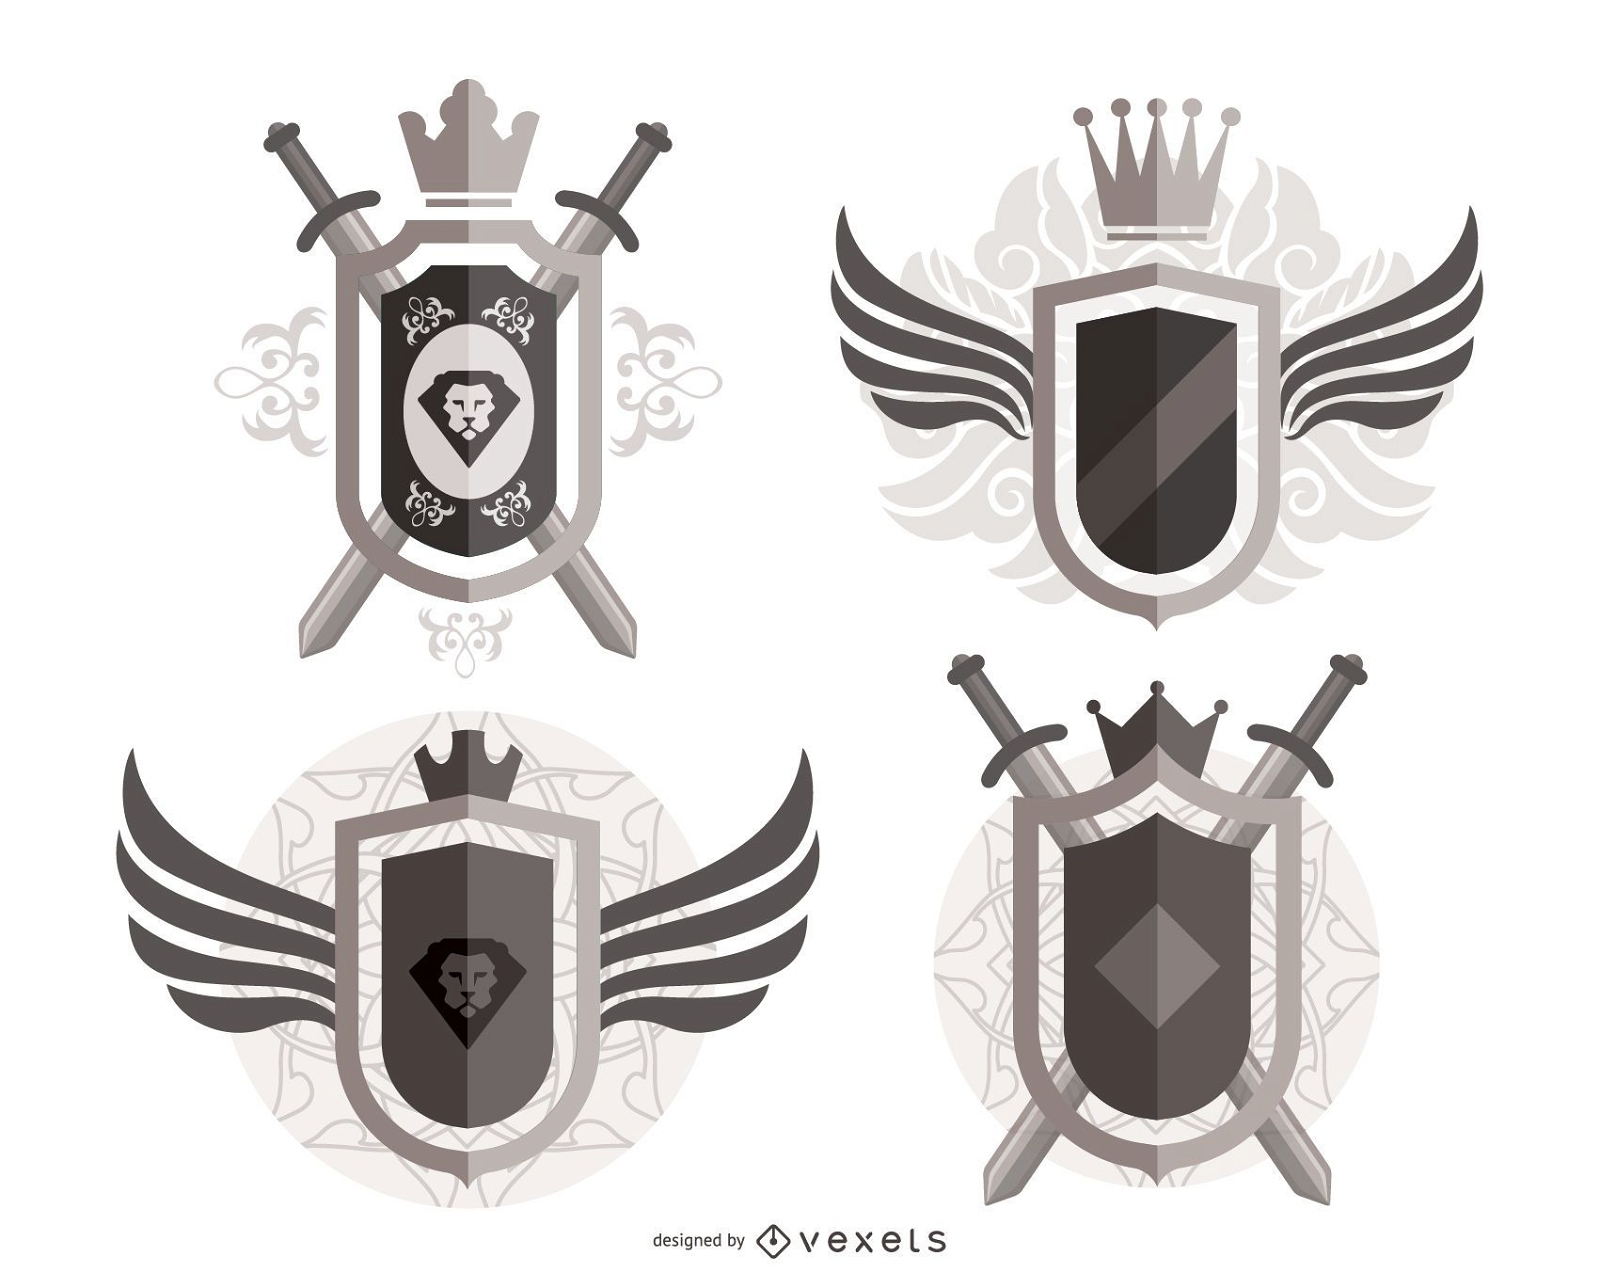 Ornate heraldic shields